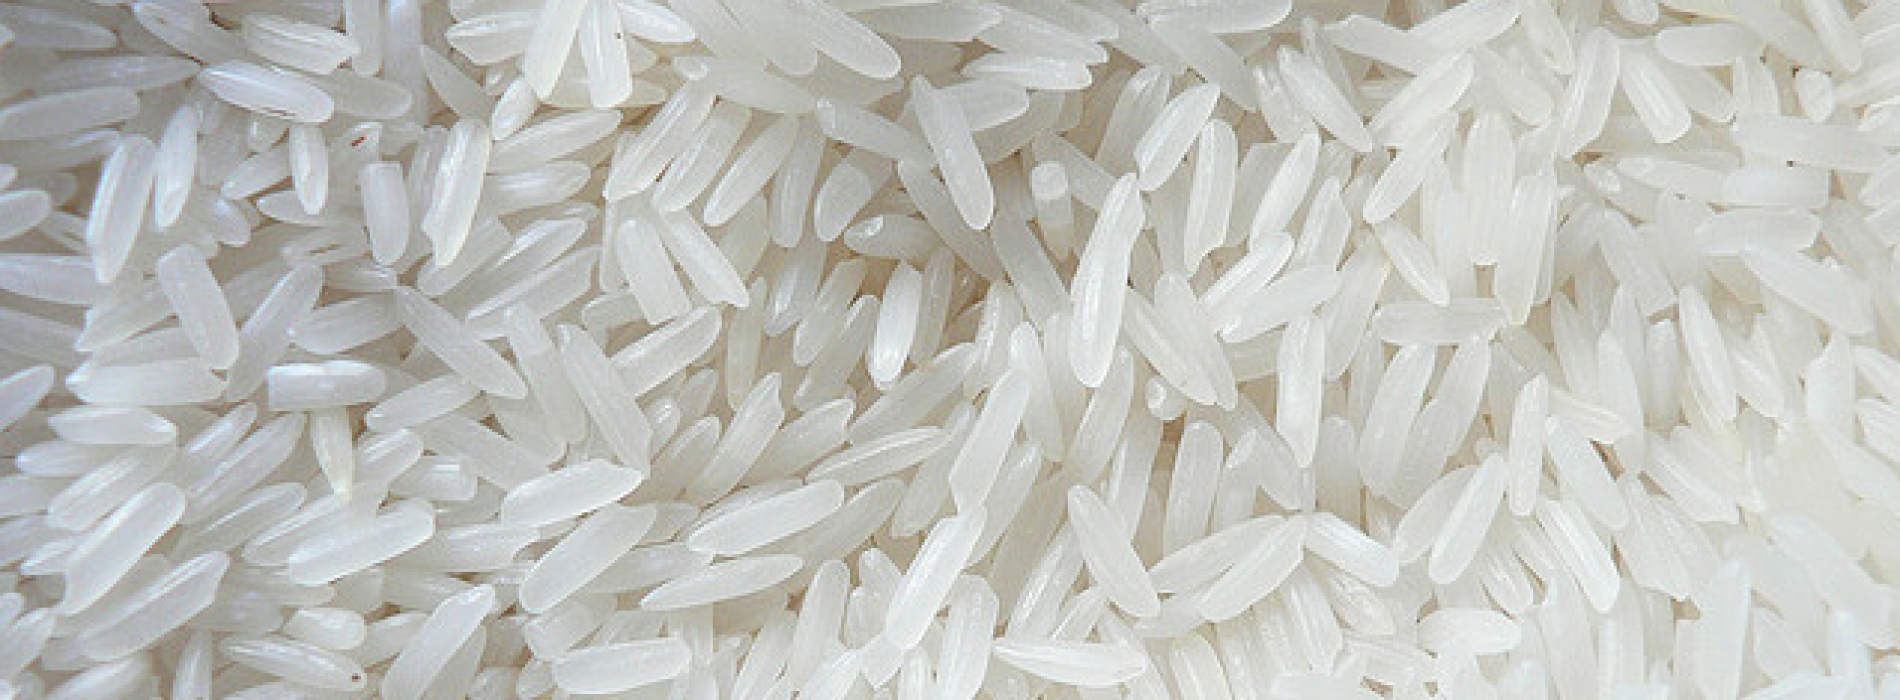 Arsenicum in rijst: Moeten we ons zorgen maken?